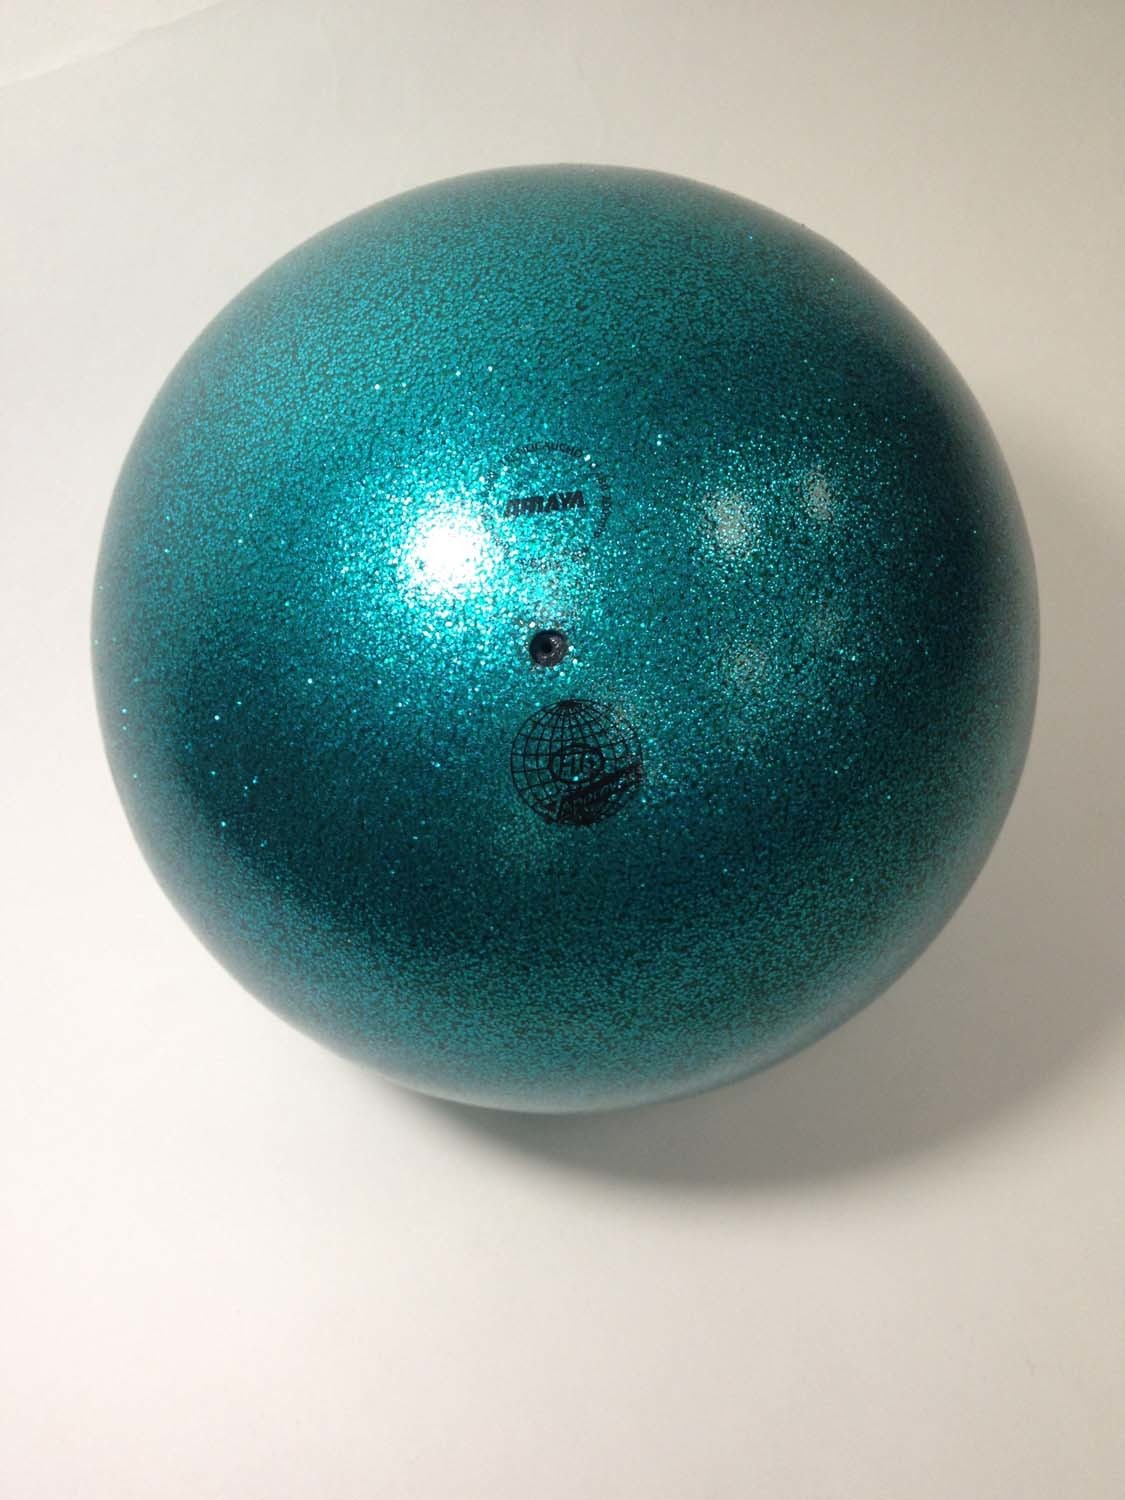 Мяч AMAYA 18,5 см Глиттер бирюзовый радужный для художественной гимнастики–  купить в интернет-магазине, цена, заказ online